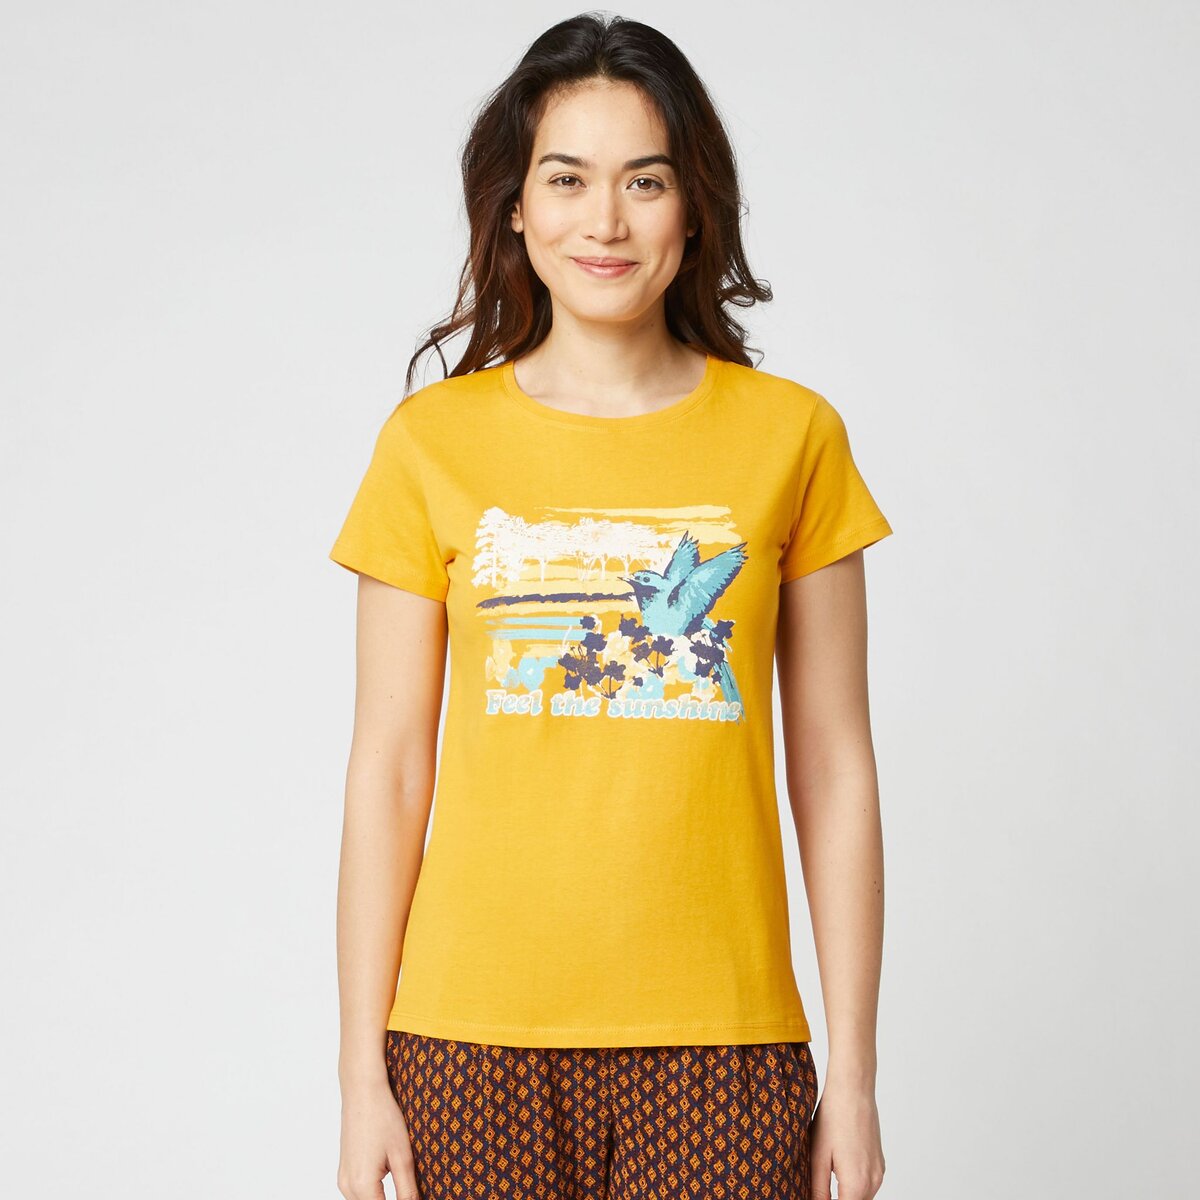 IN EXTENSO T-shirt manches courtes jaune imprimé sunshine femme